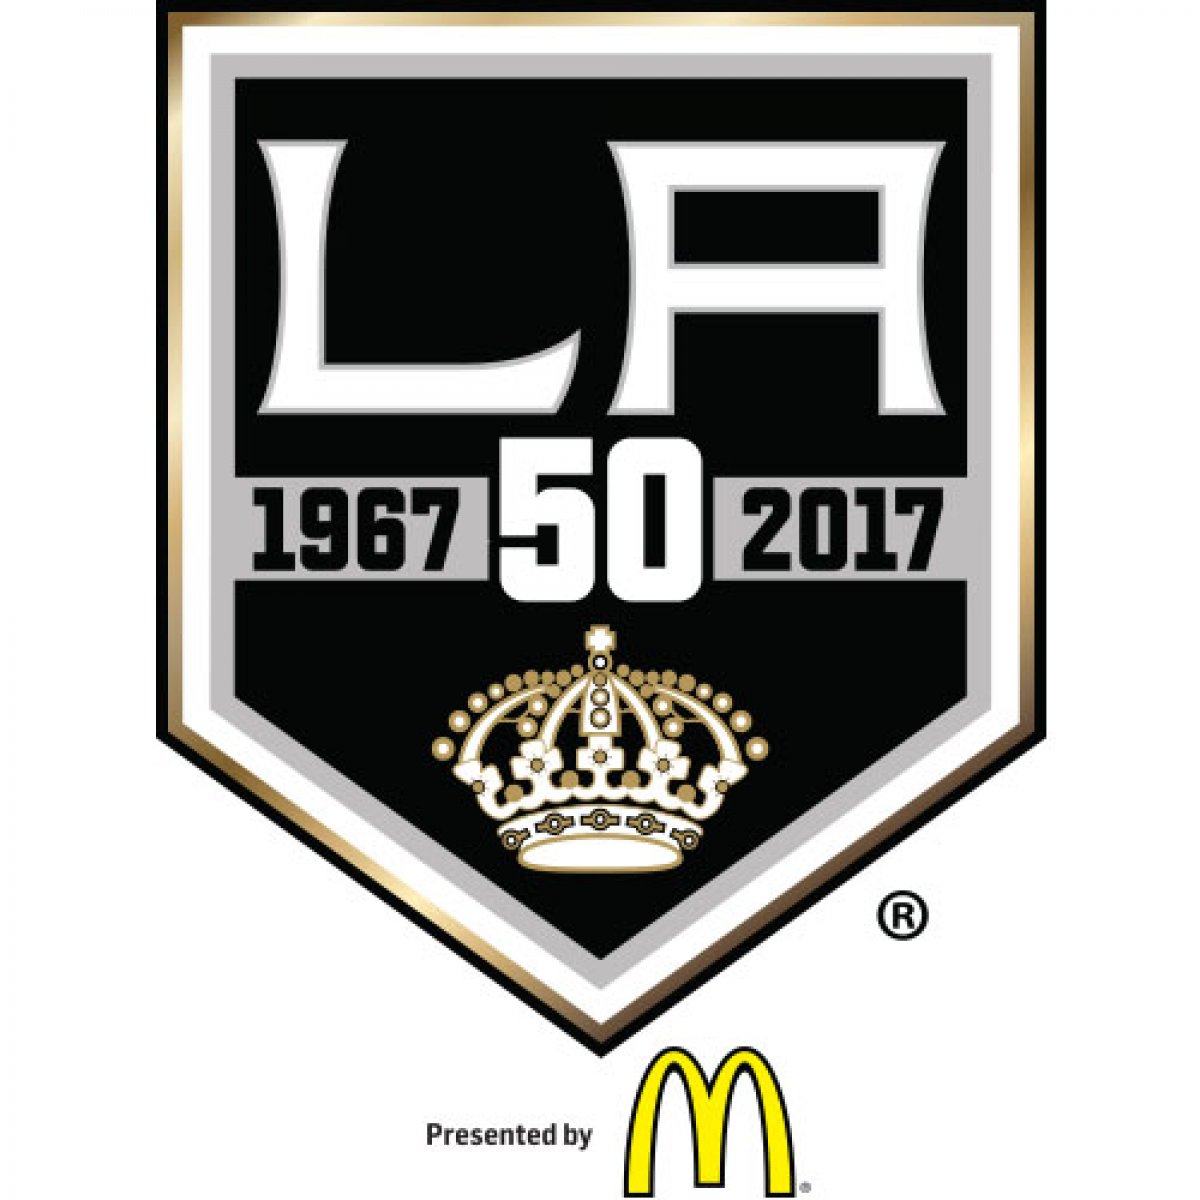 LA Kings 50th anniversary logo